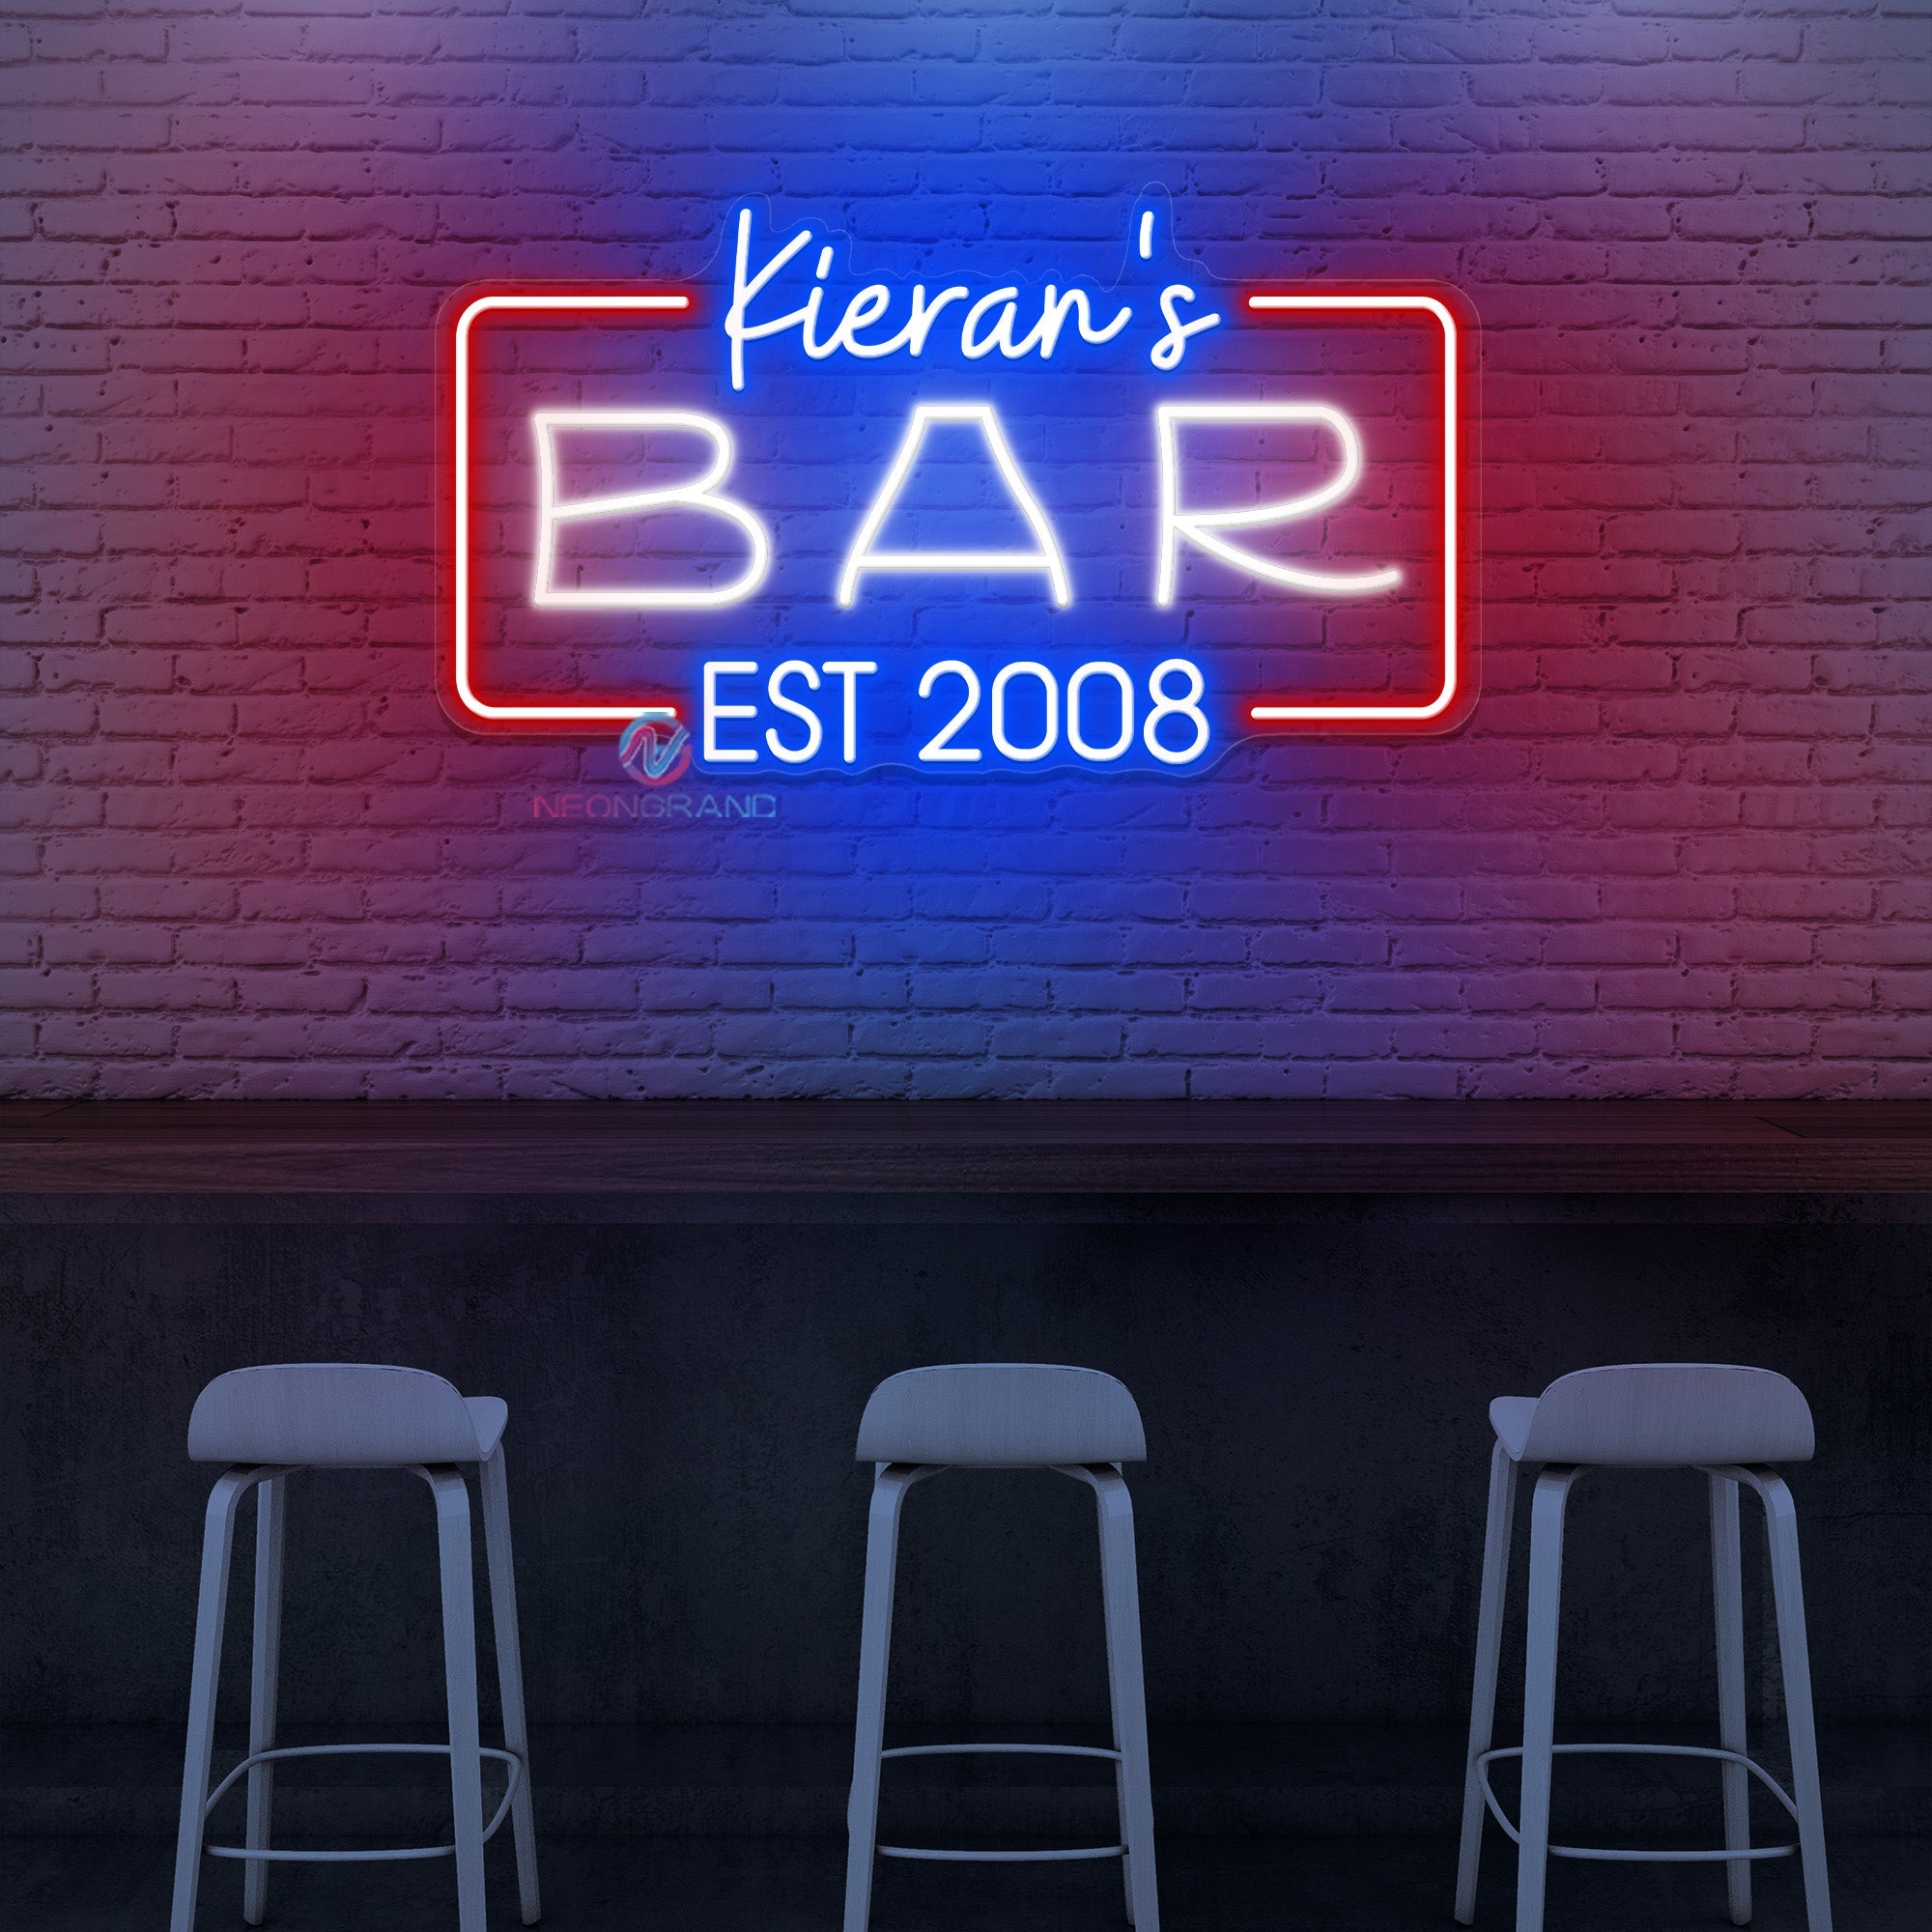 Neon Bar EST Sign Custom Name Led Light